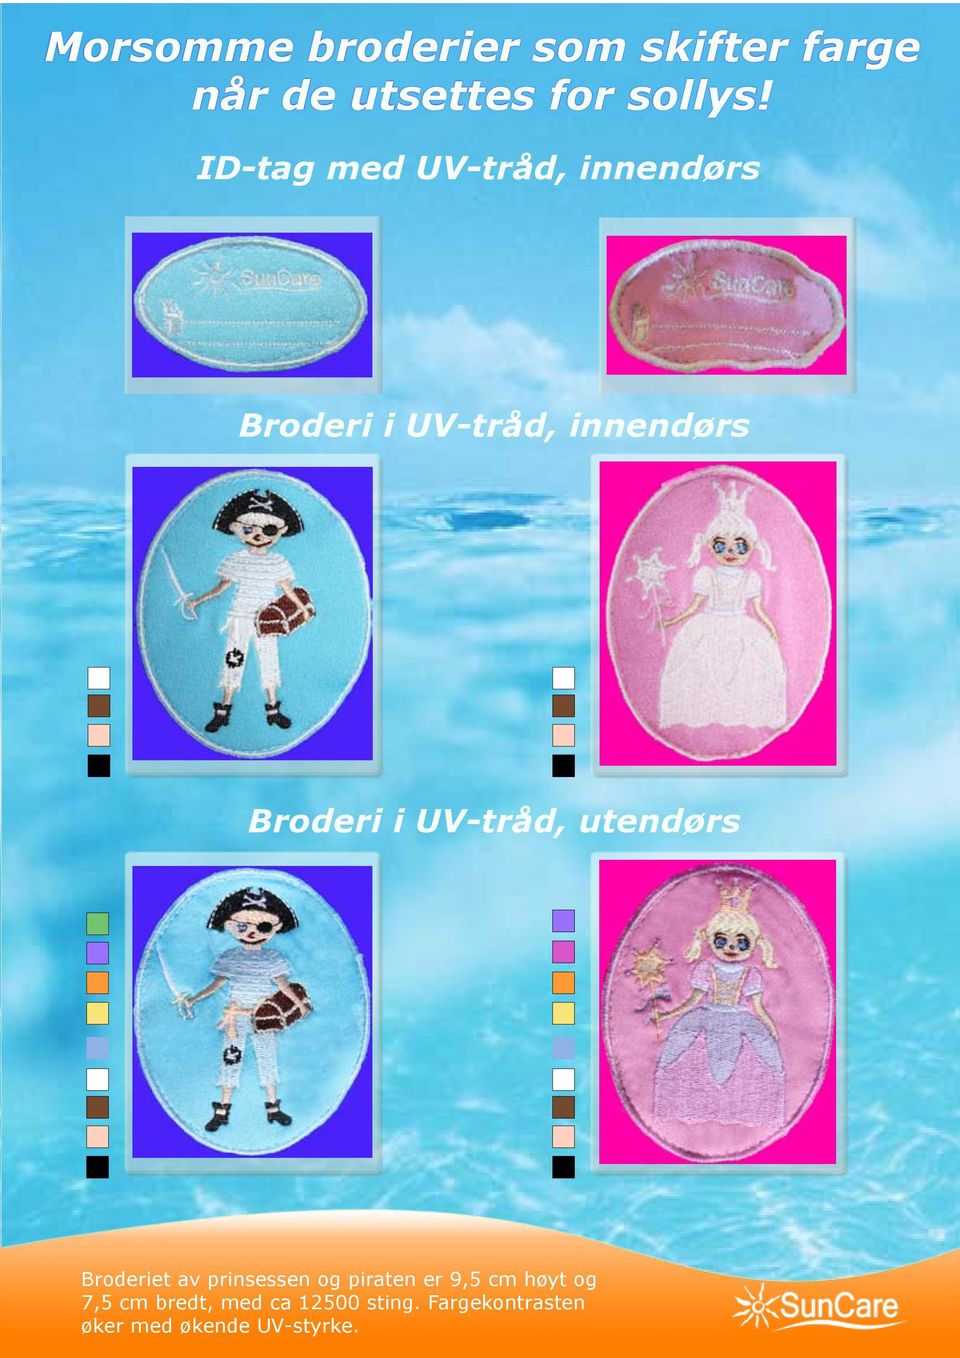 UV-tråd, utendørs Broderiet av prinsessen og piraten er 9,5 cm høyt og